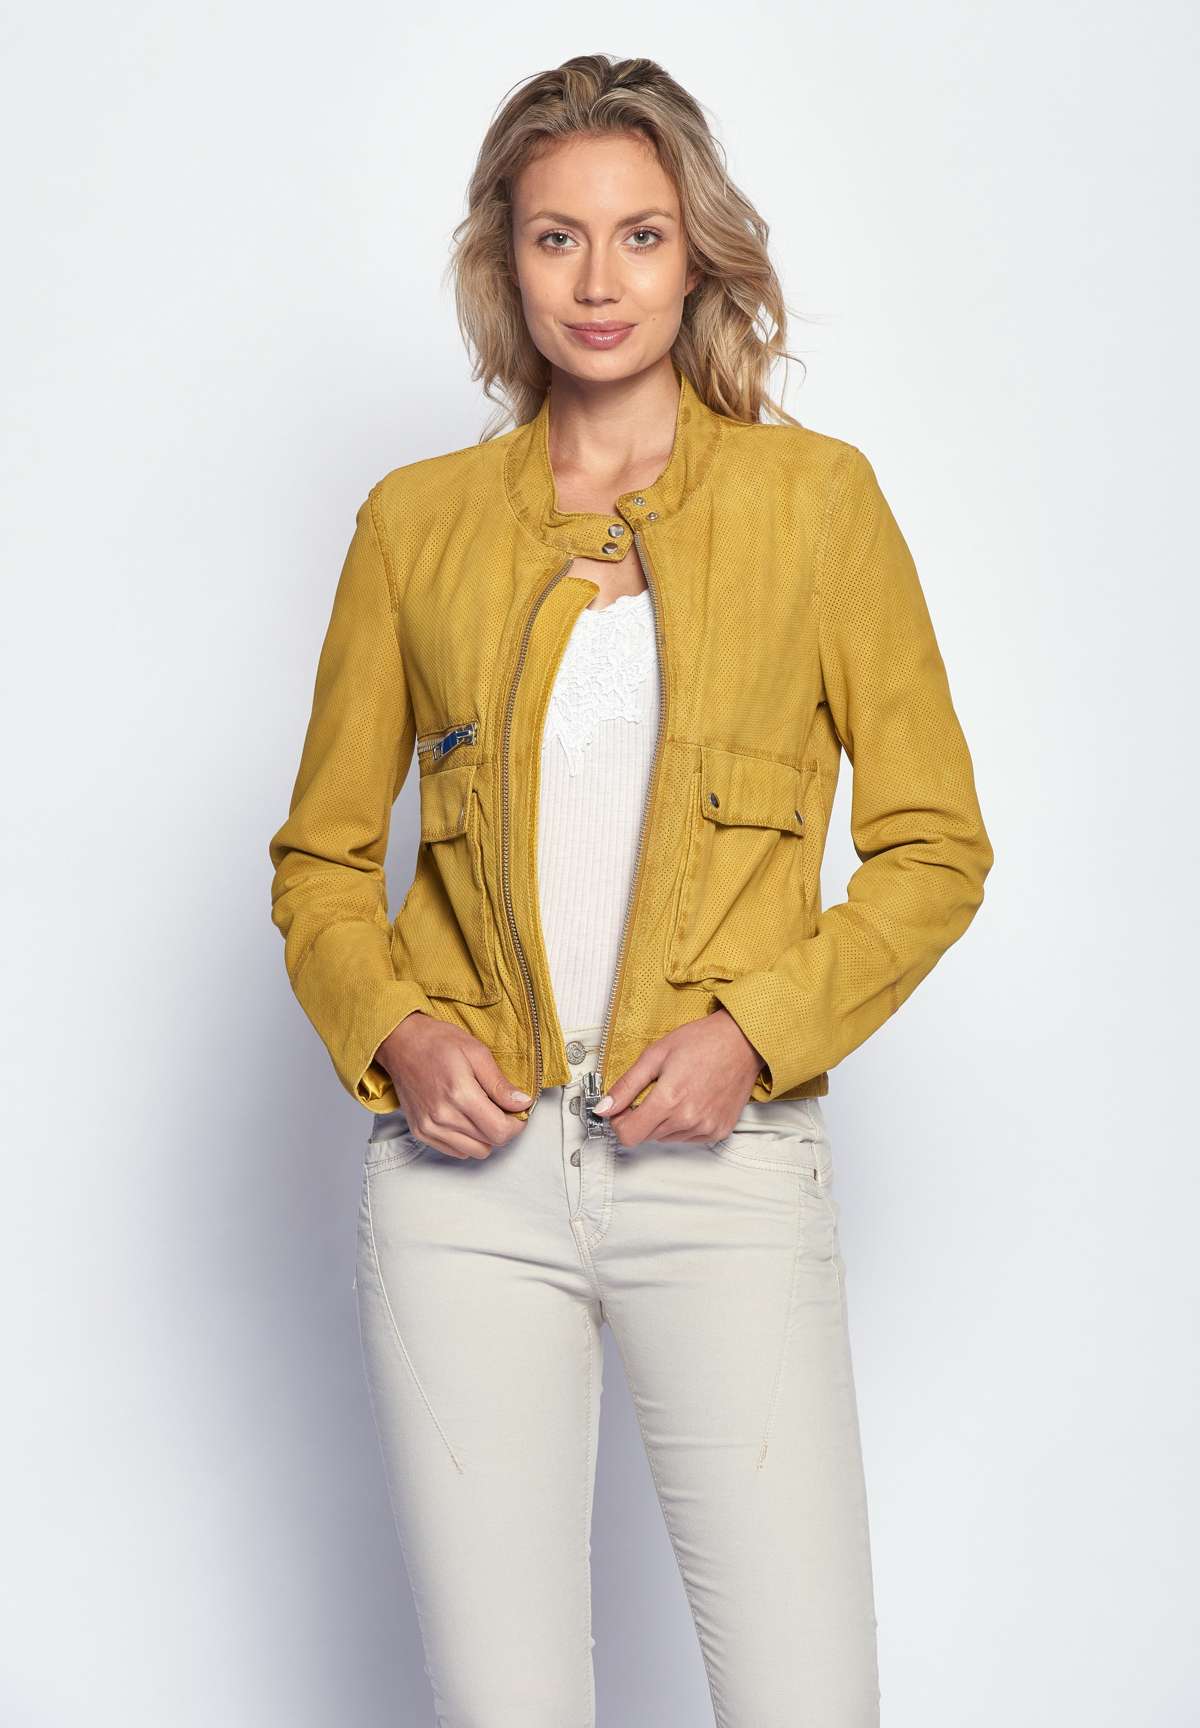 Кожаный пиджак JOYLY.RU с желтый в MAZE по цвет магазине России купить доставкой одежды